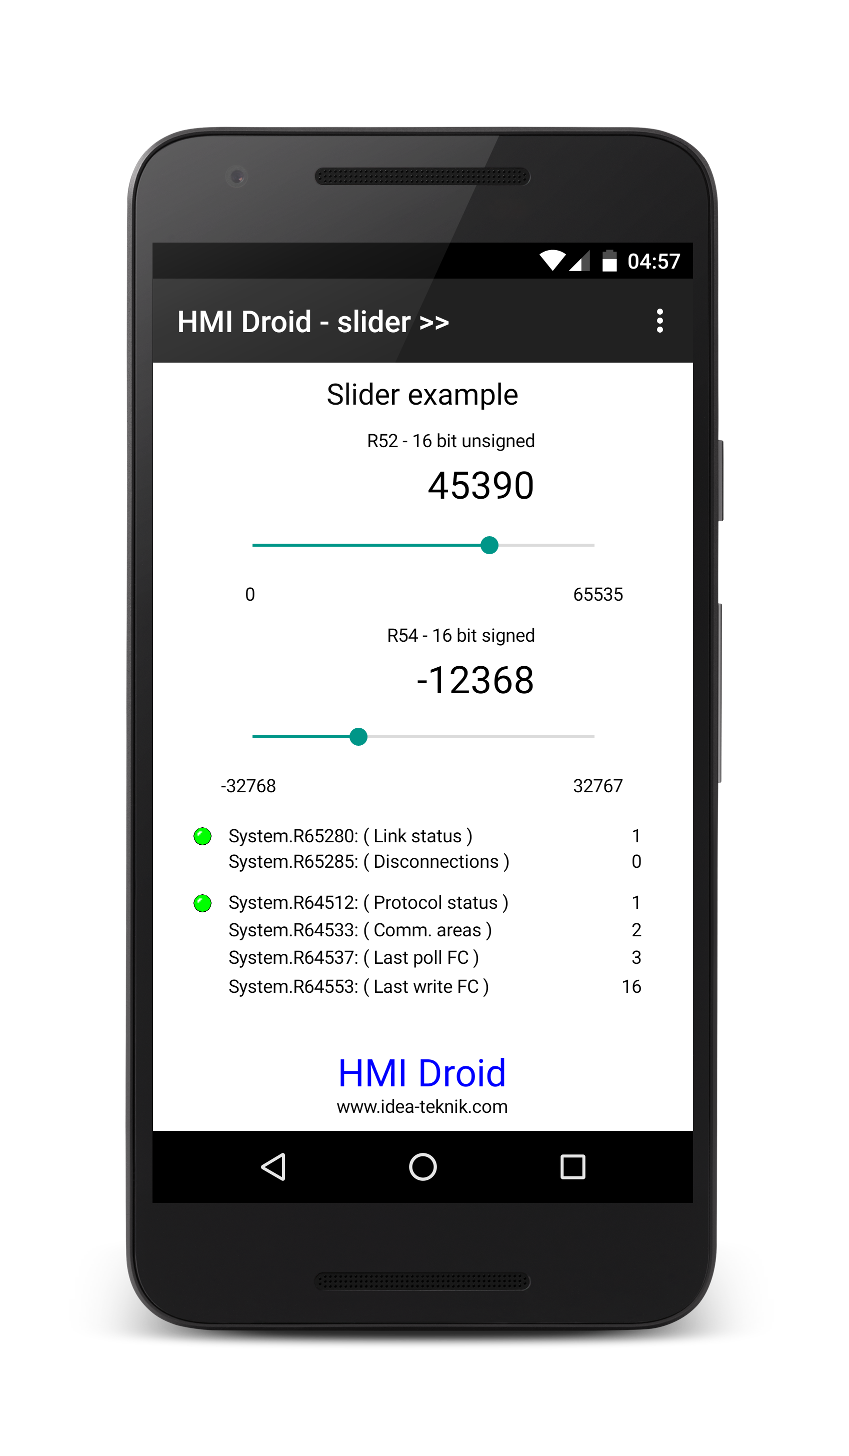 HMI Droid - Slider example